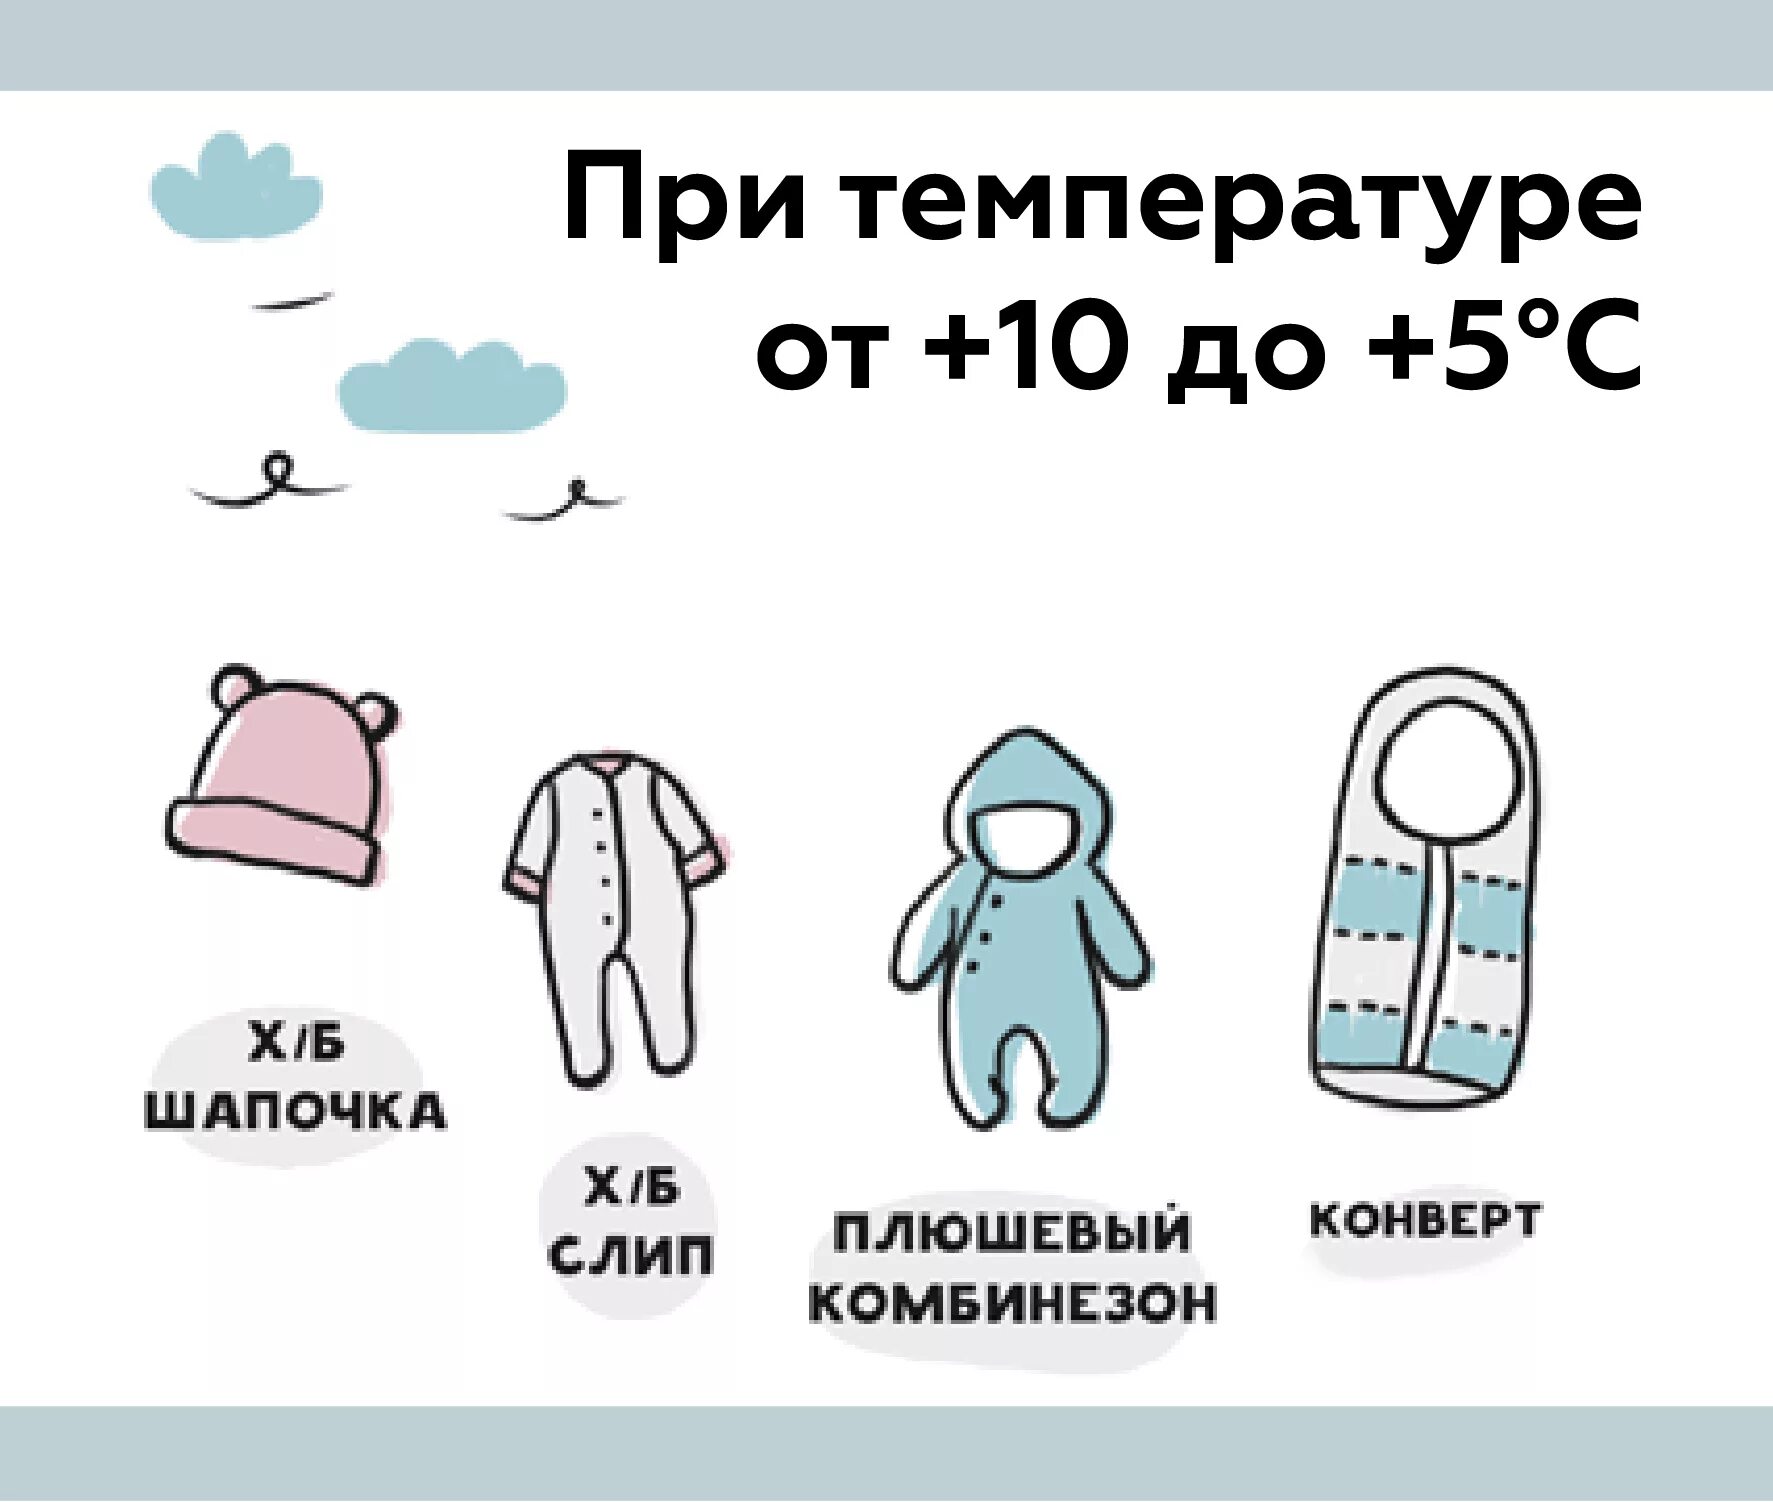 Как одеть грудничка на прогулку в +10. Как одевать грудничка на улицу в +10. Как одевать малыша в 10 градусов тепла. Как одевать грудничка в +25 на прогулку.